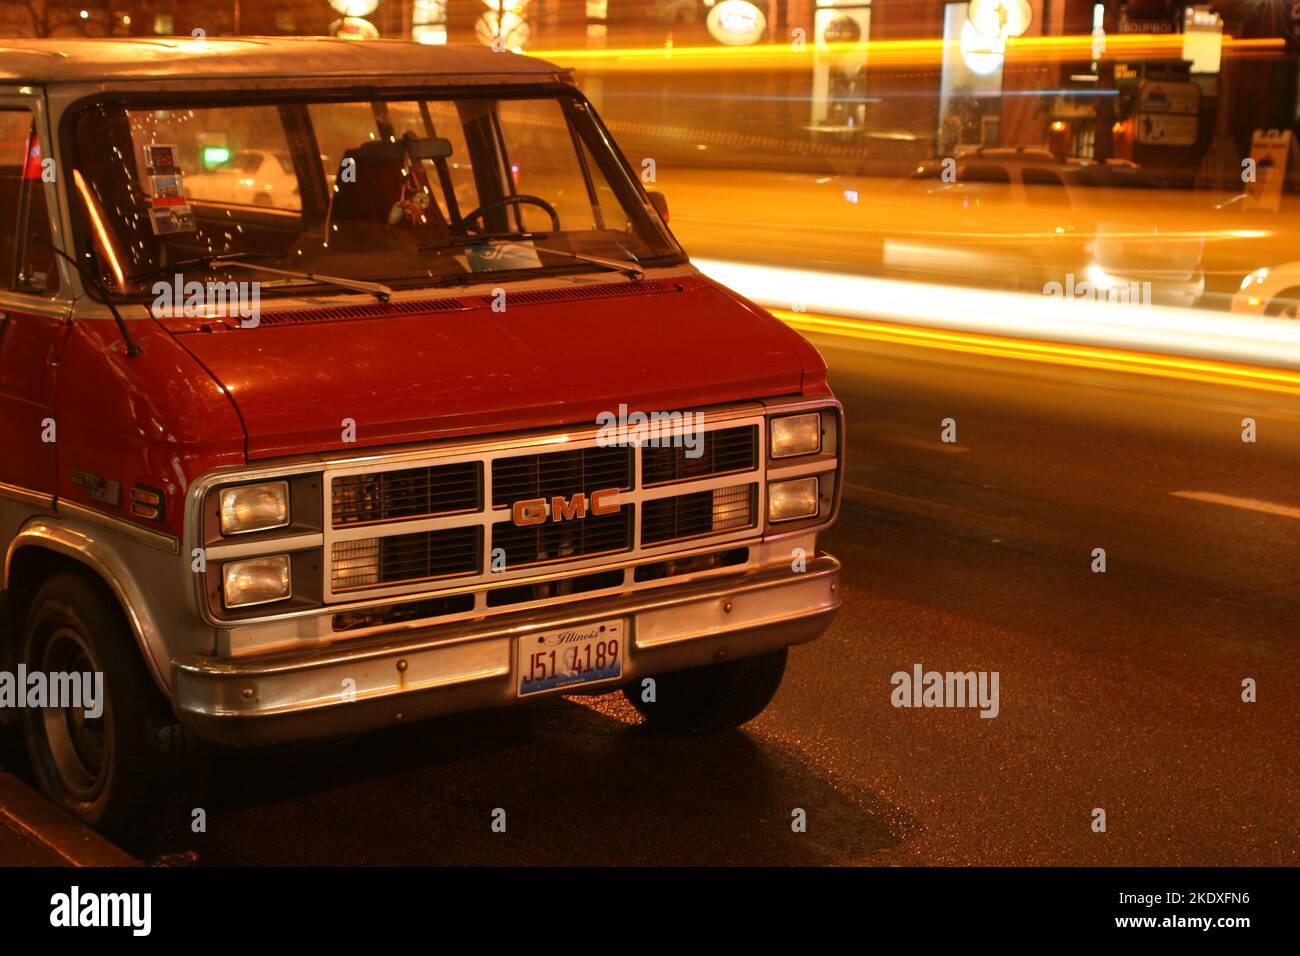 Red Dodge Van in Chicago Stock Photo